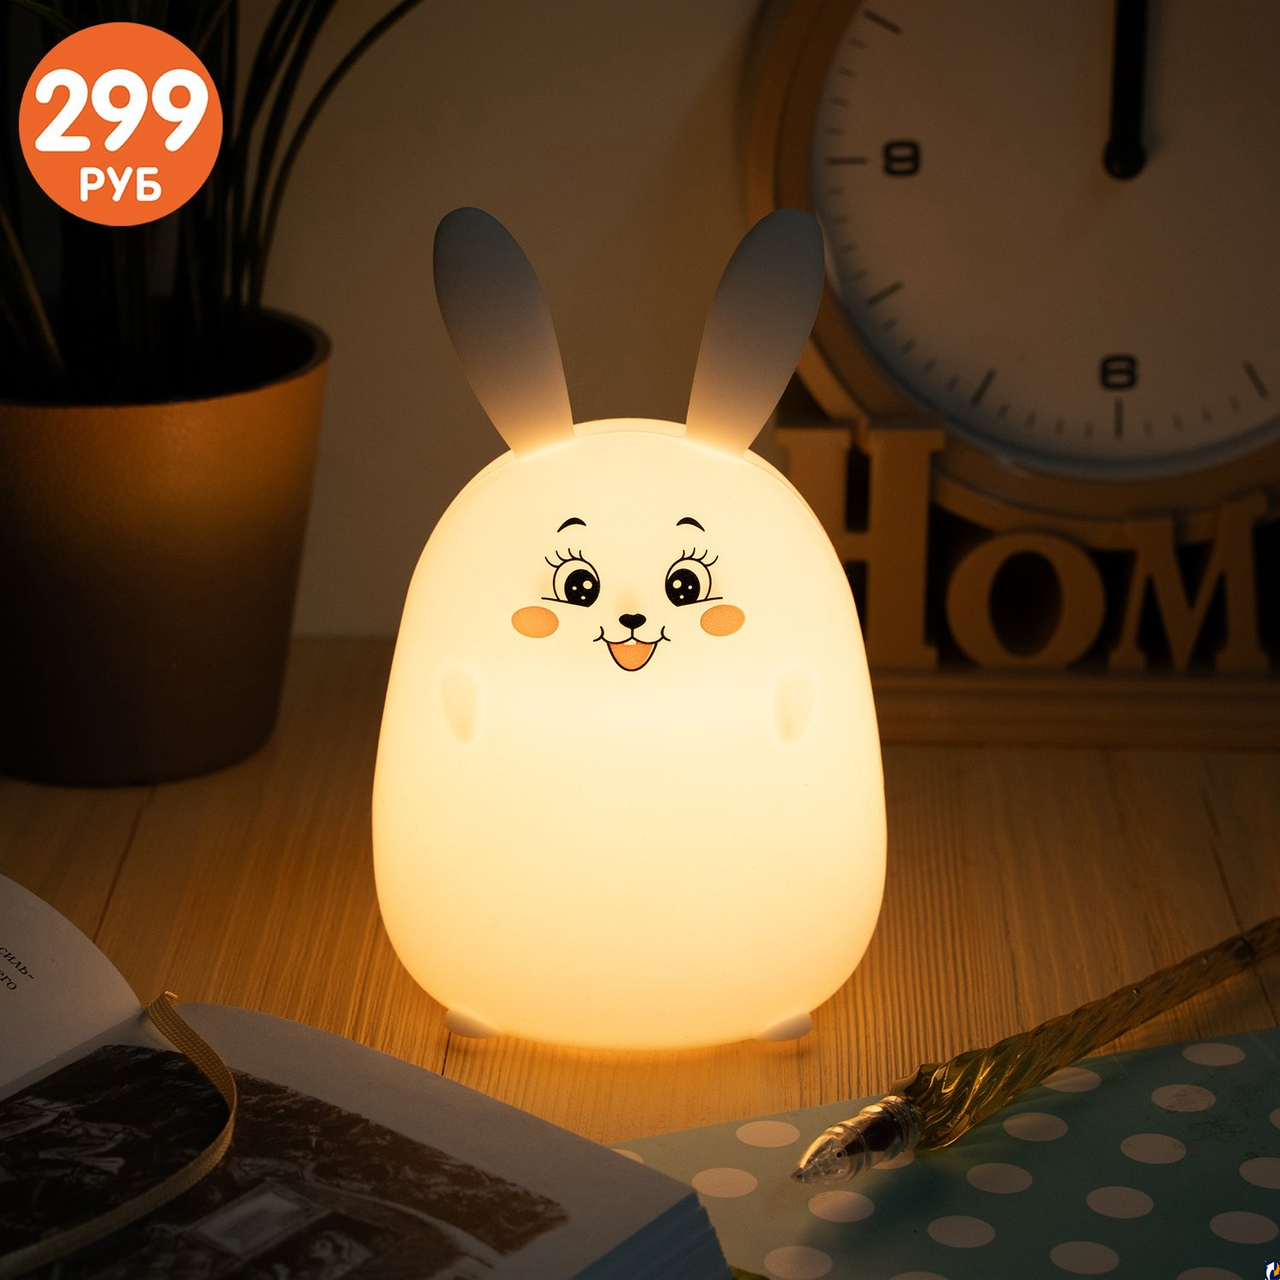 Светодиодный светильник-ночник продают в магазинах города за 299 рублей